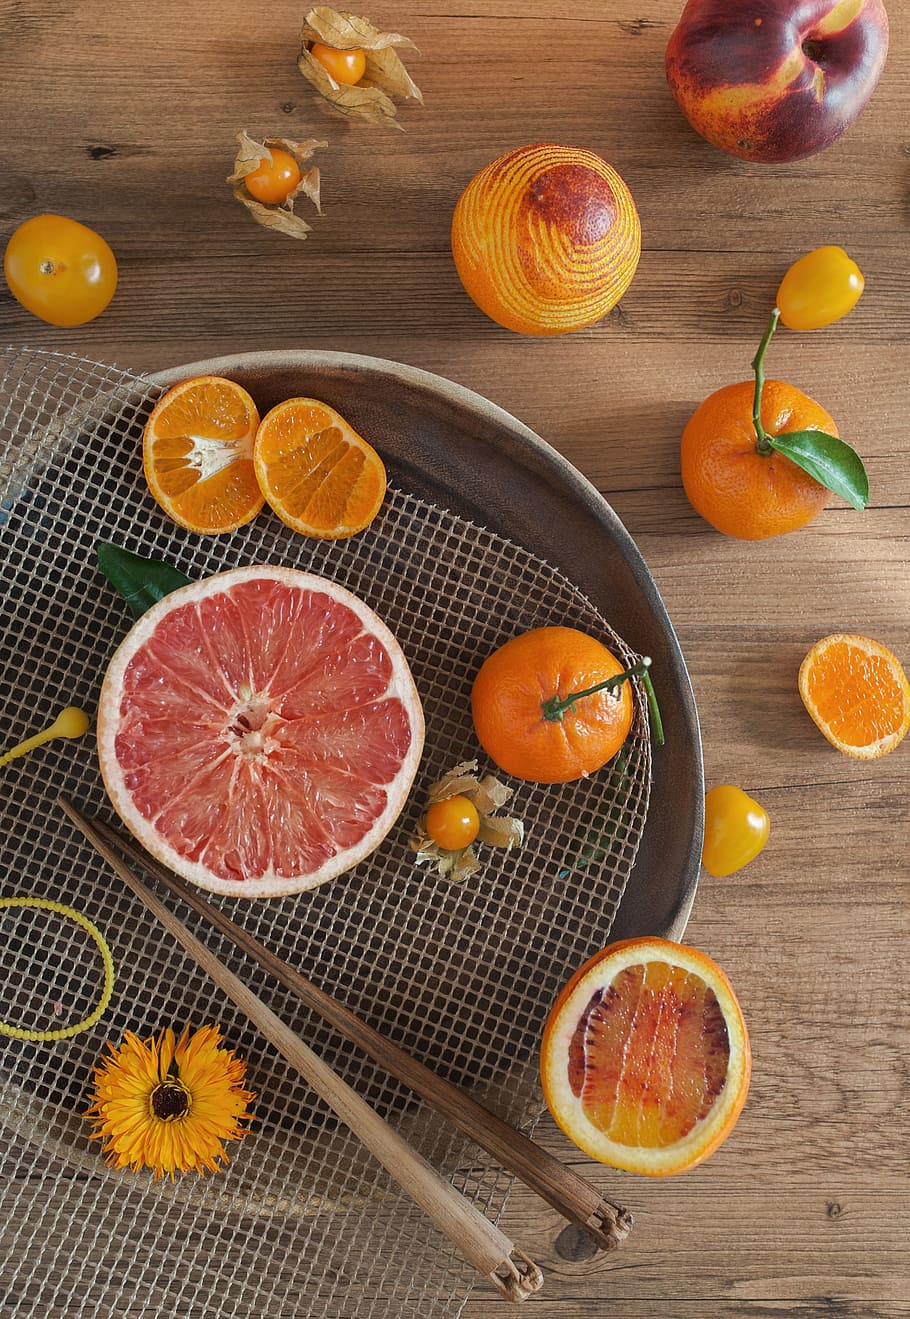 オレンジ, クレメンタイン, 柑橘類, 果物, みかん, 花, 柑橘系の果物, 食べ物, 食べ物と飲み物, 健康的な食事